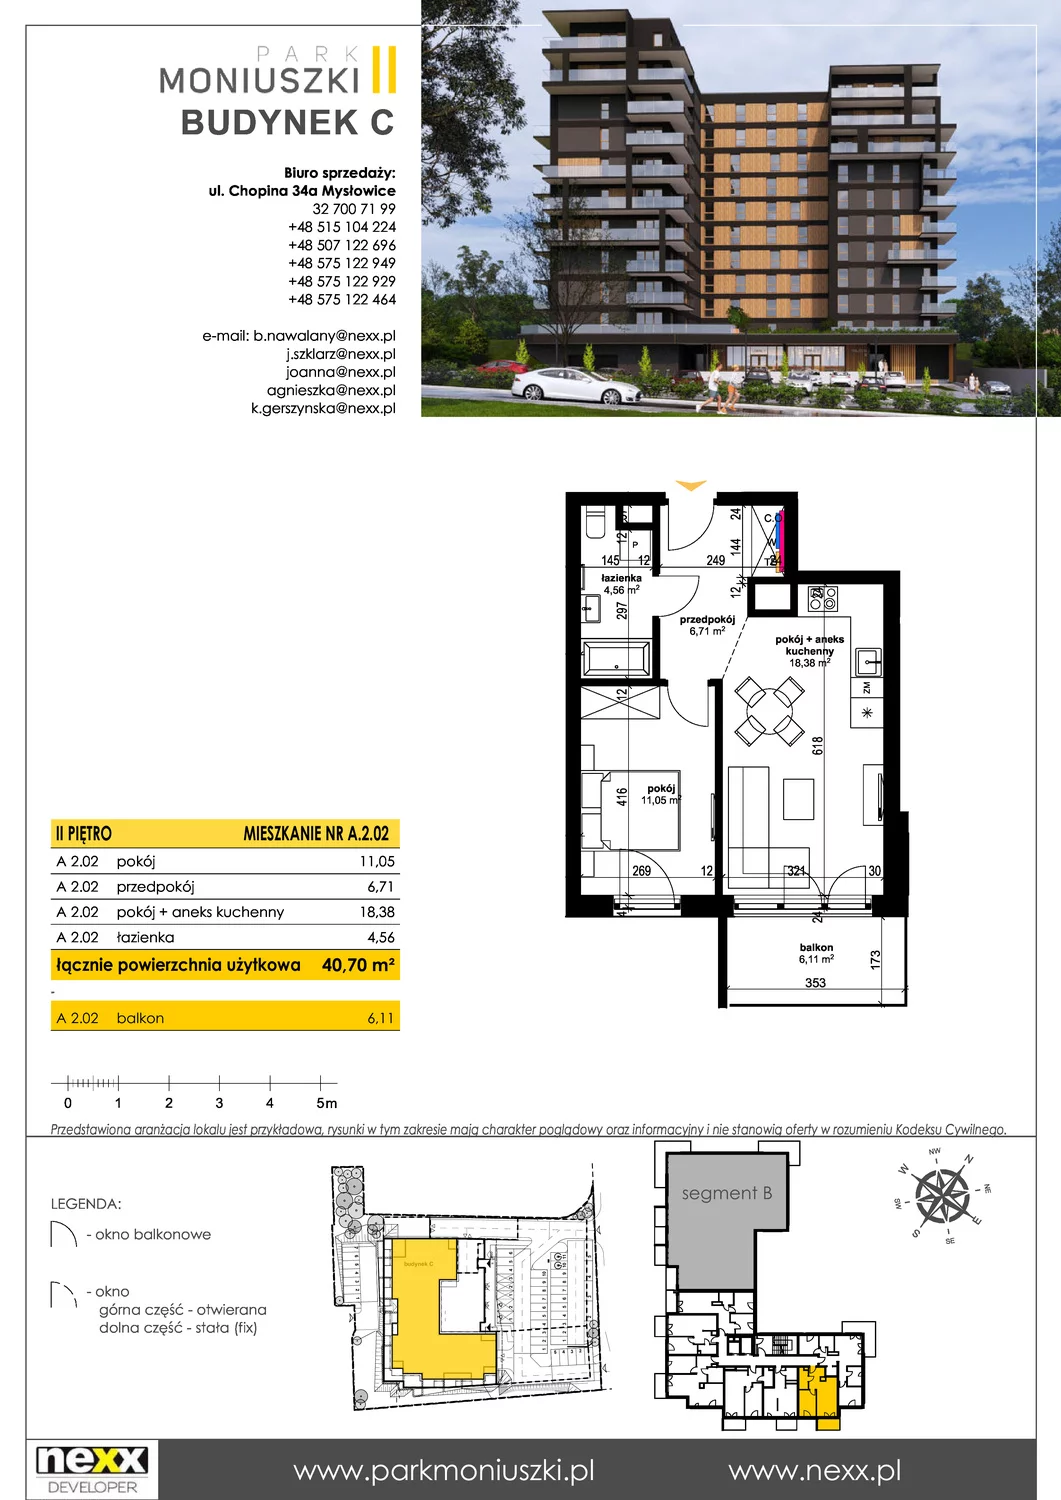 Mieszkanie 40,70 m², piętro 2, oferta nr A 2.02, Osiedle Park Moniuszki, Mysłowice, ul. Okrzei / Wielka Skotnica